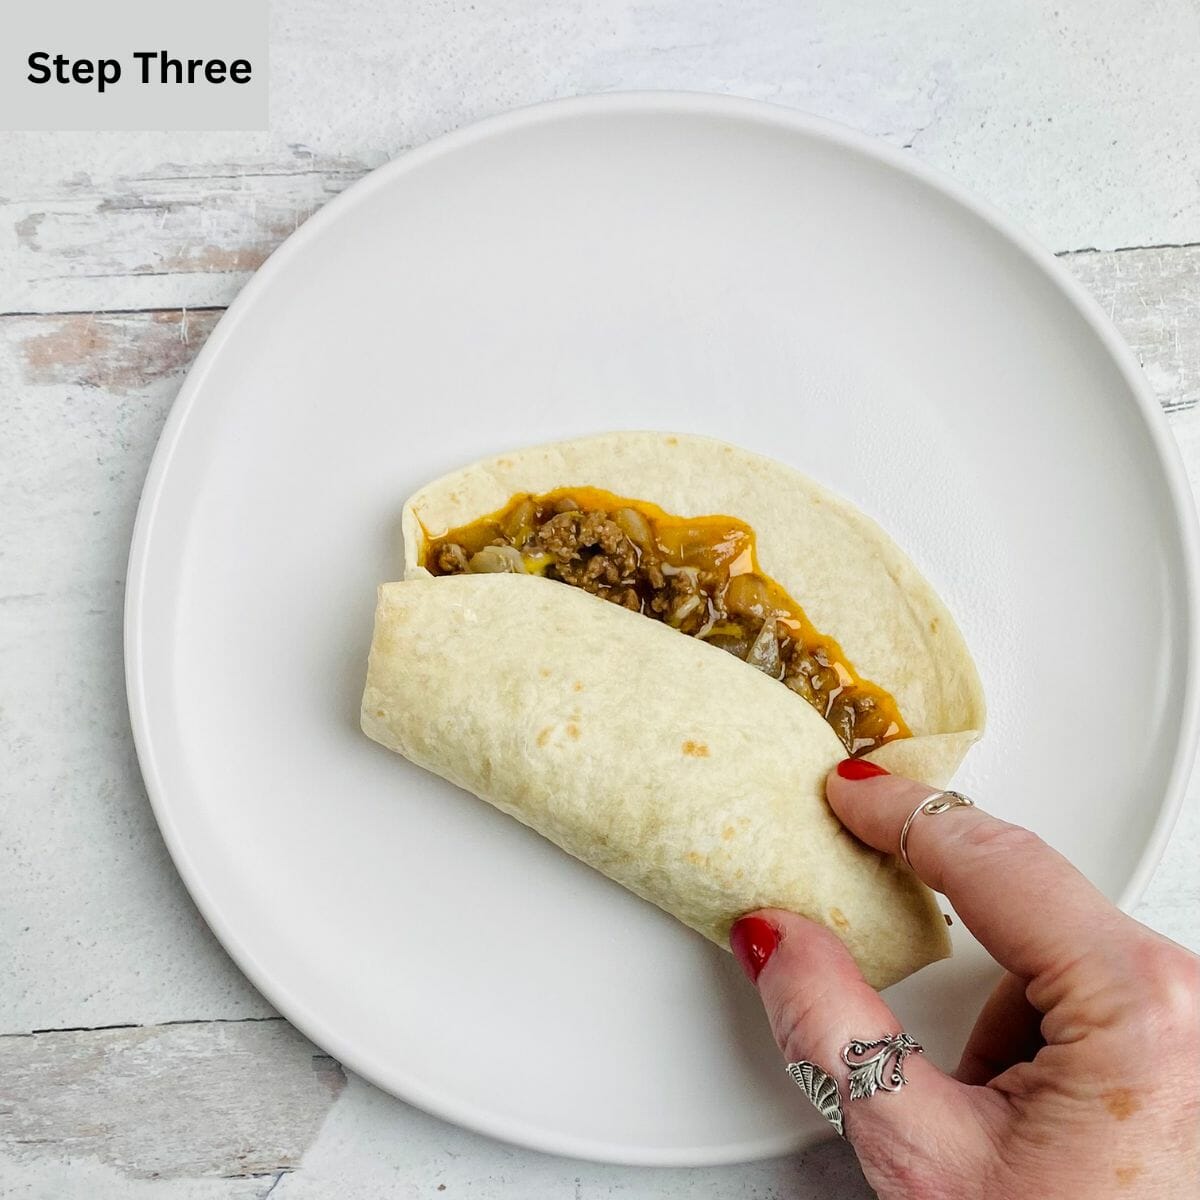 Taco wrap folding on a plate.